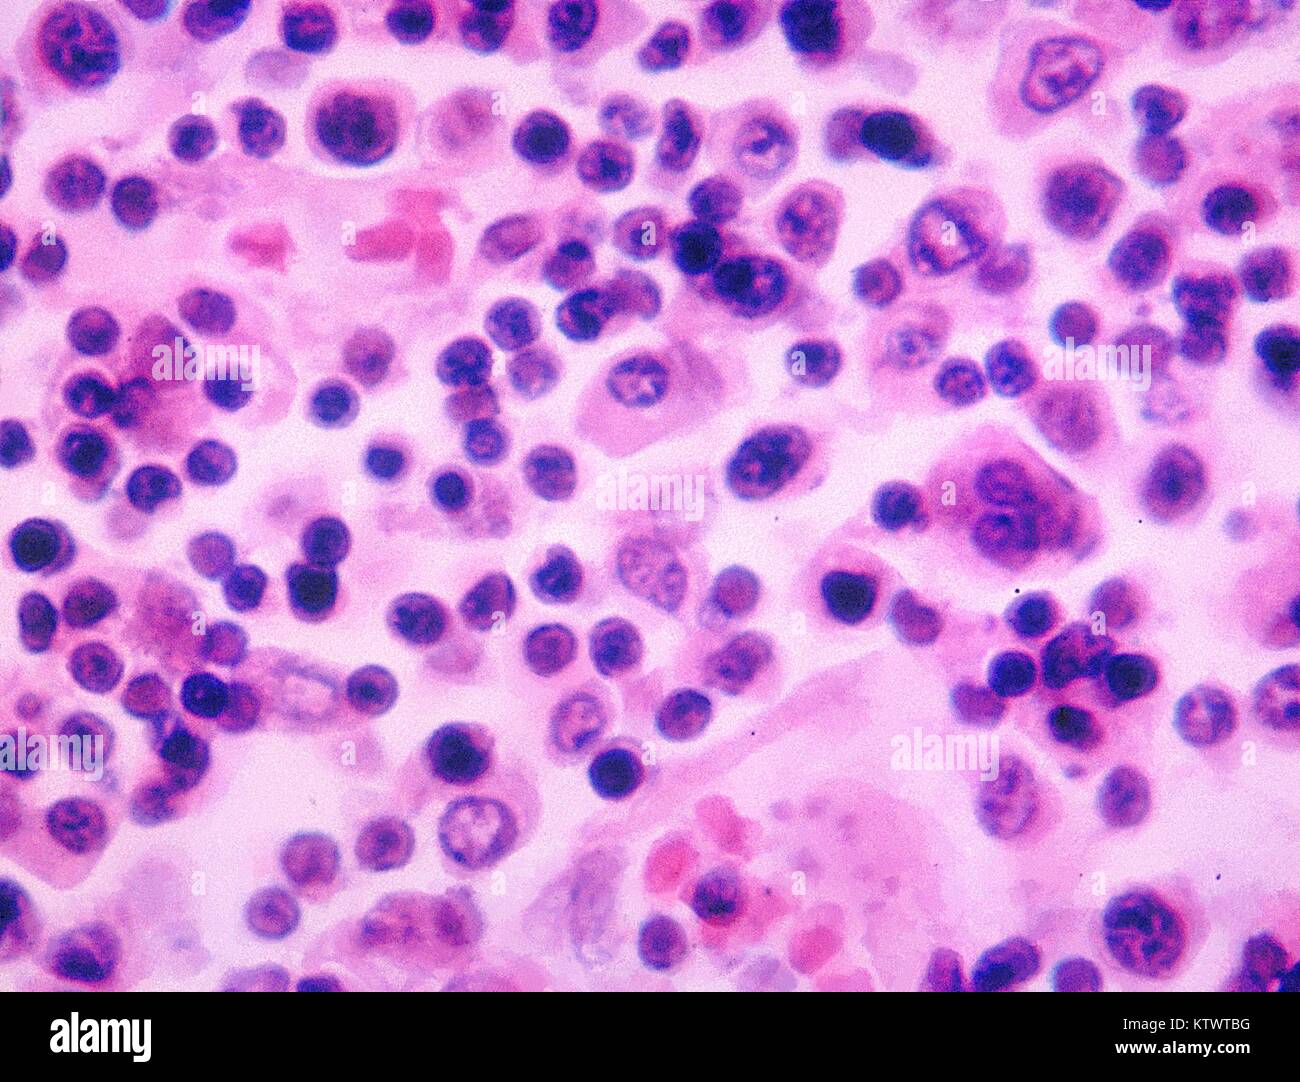 La histopatología de un ganglio linfático en un caso de fiebre tifoidea.  Después inicialmente de ser ingeridos en alimentos contaminados tales como  mariscos, o agua, la bacteria Salmonella typhi migran a través